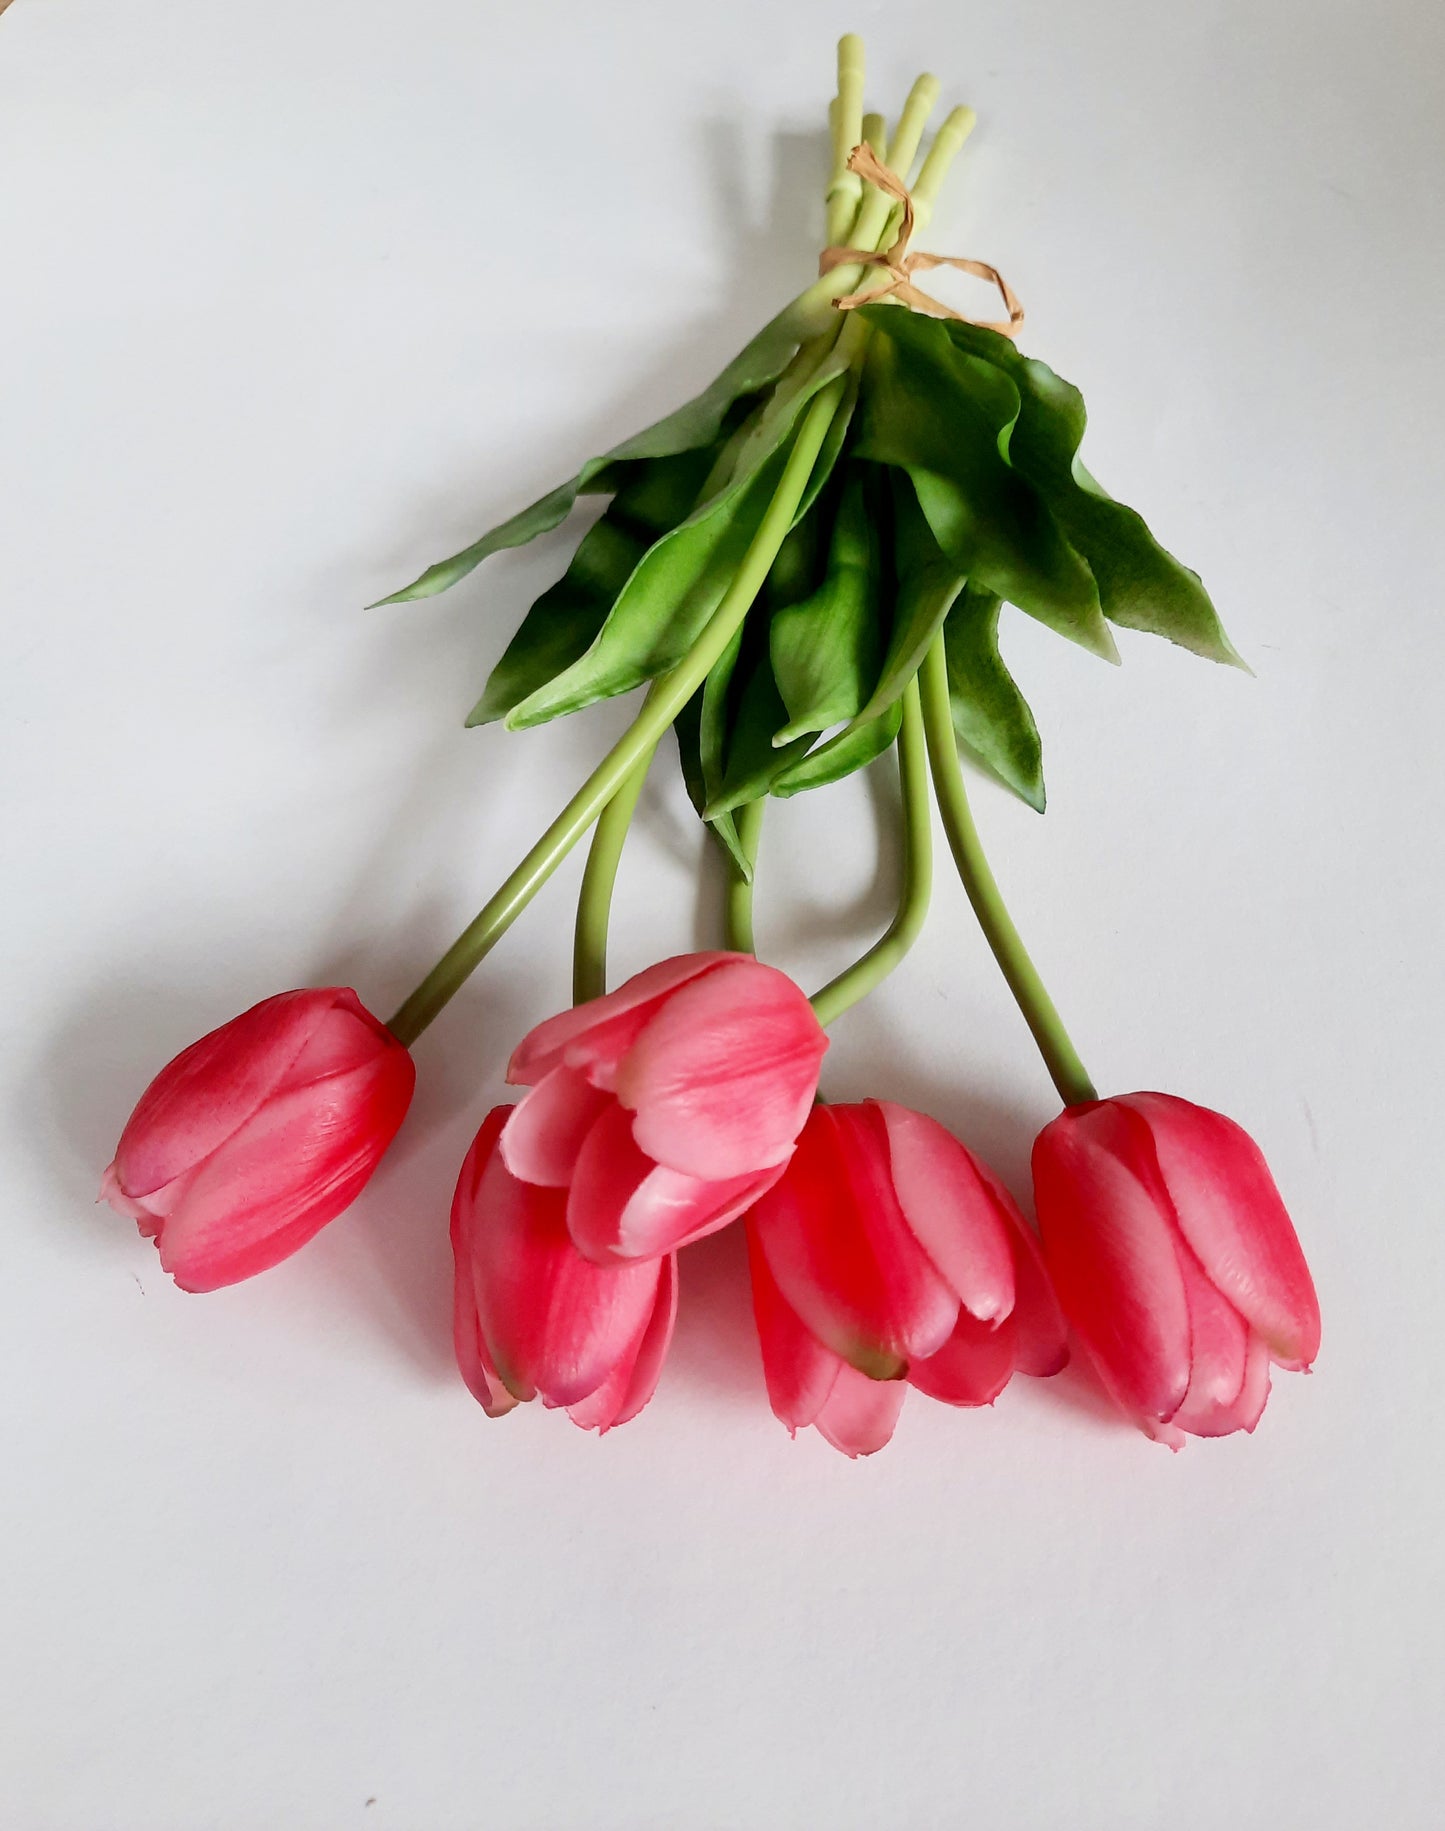 Der lebensechte Gummitulpen-Kunstblumenstrauß mit Laschen